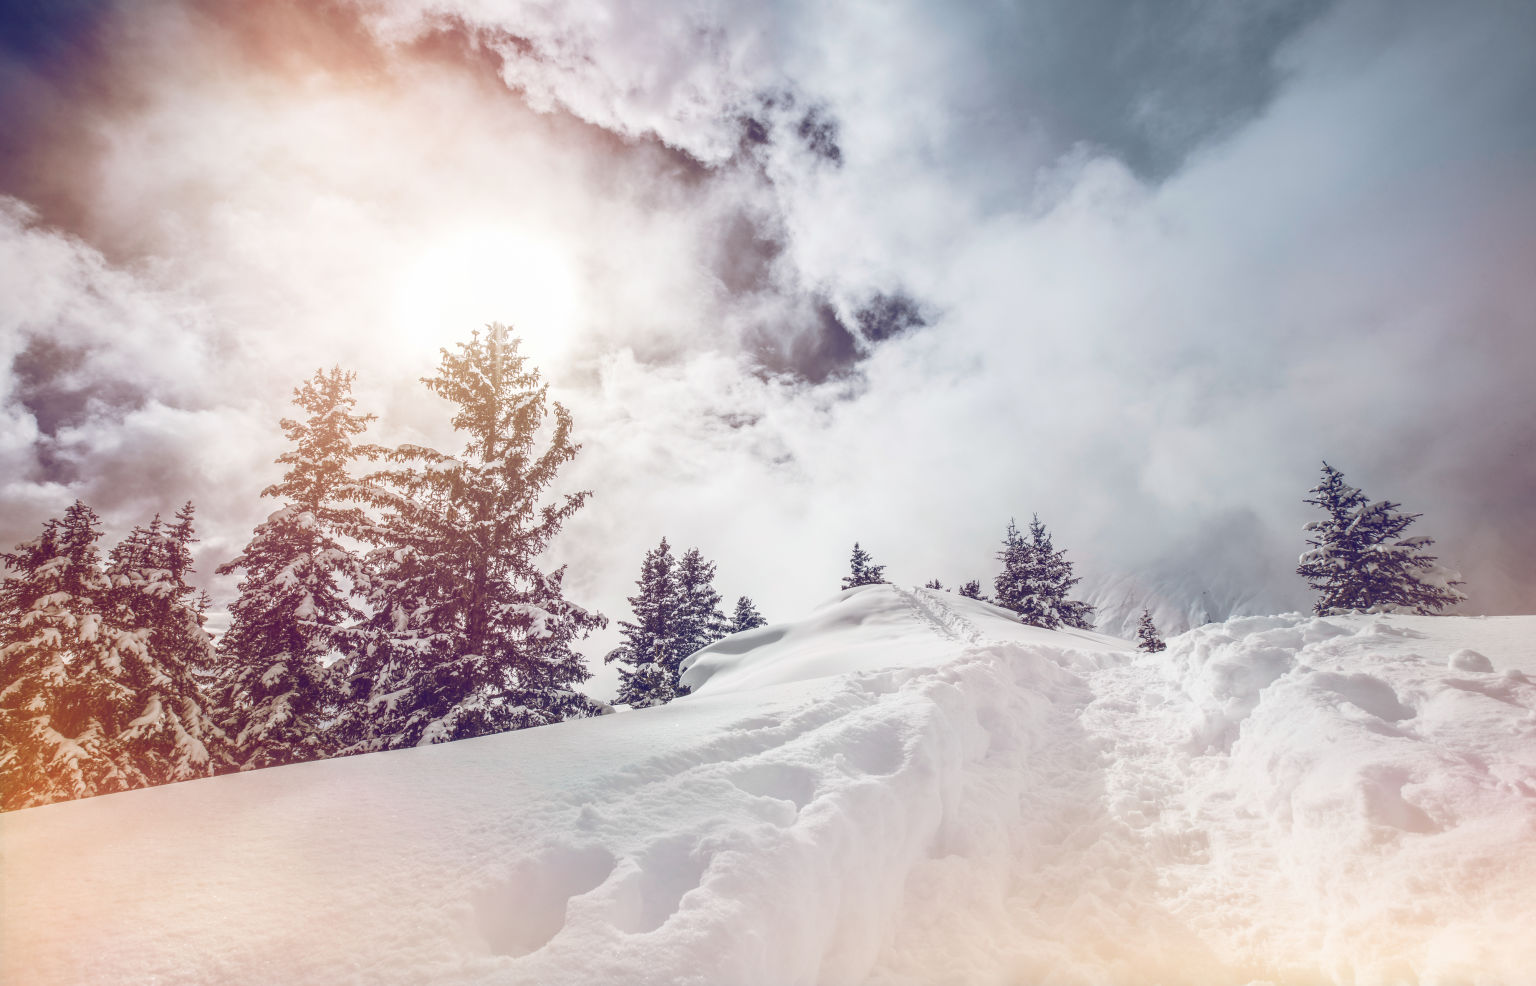 Spüren im Schnee in Belalp, Winter im Wallis, Skiferien im Wallis, Schweiz